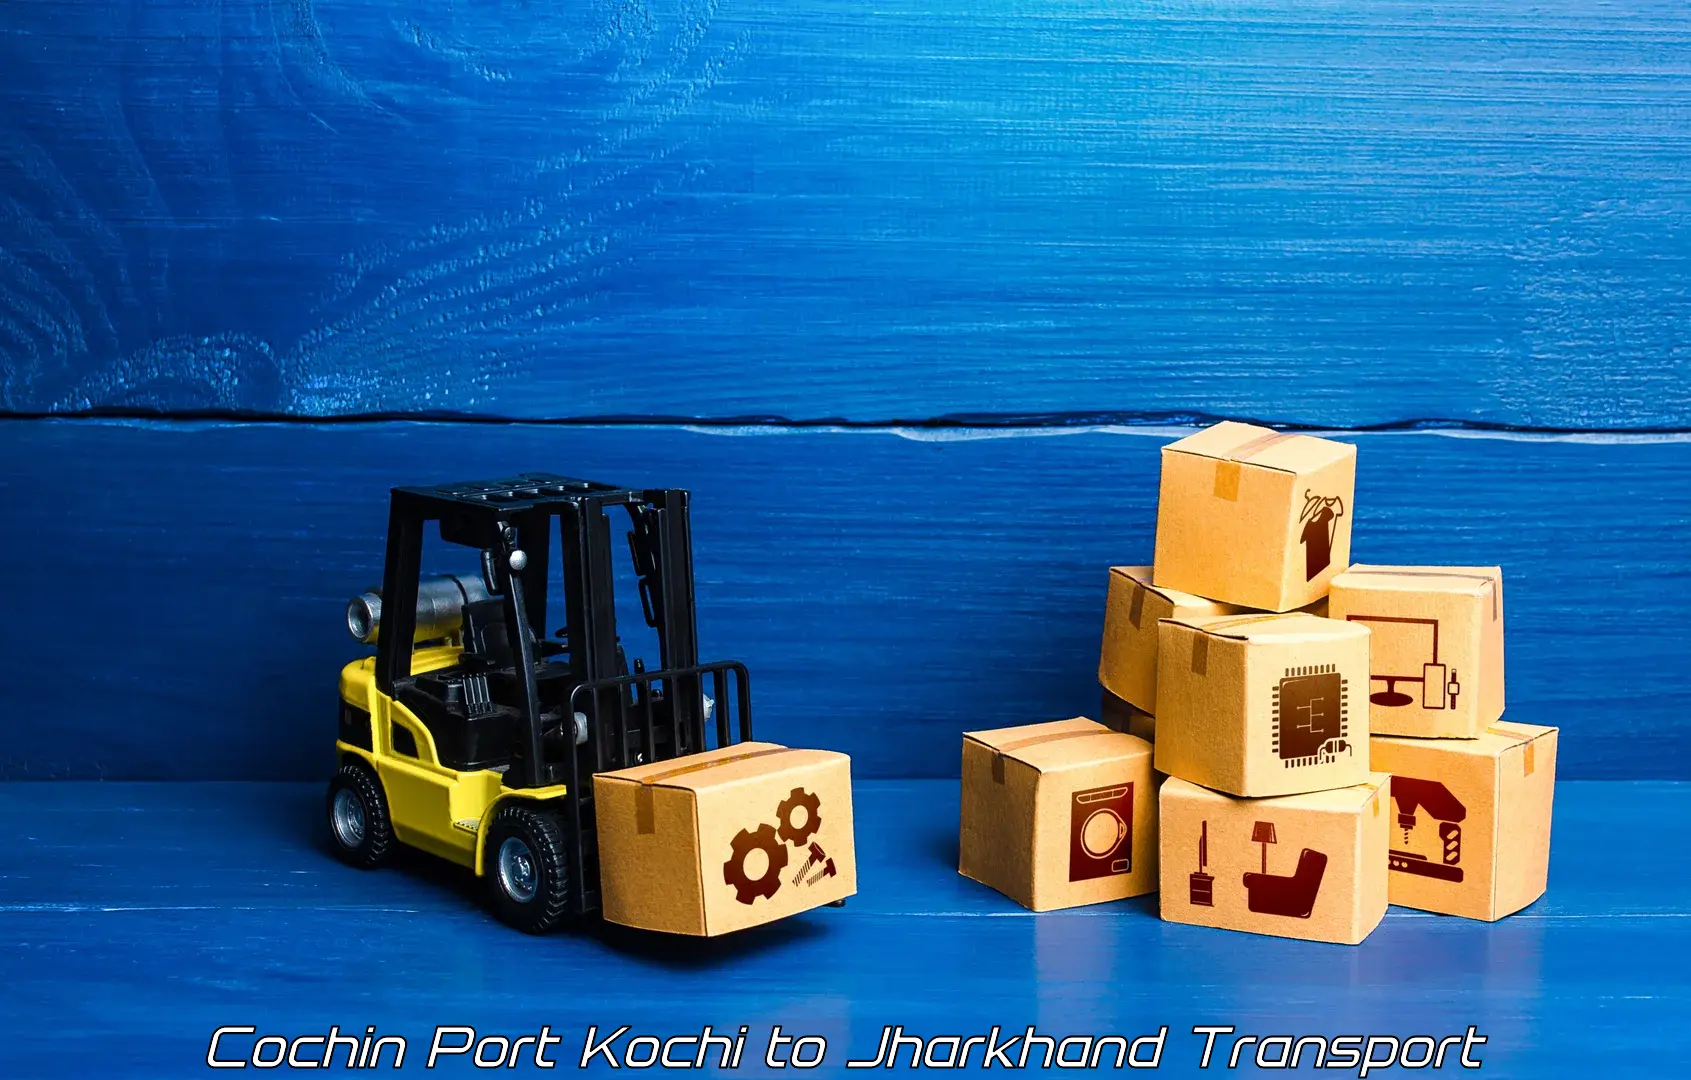 Furniture transport service Cochin Port Kochi to Medininagar